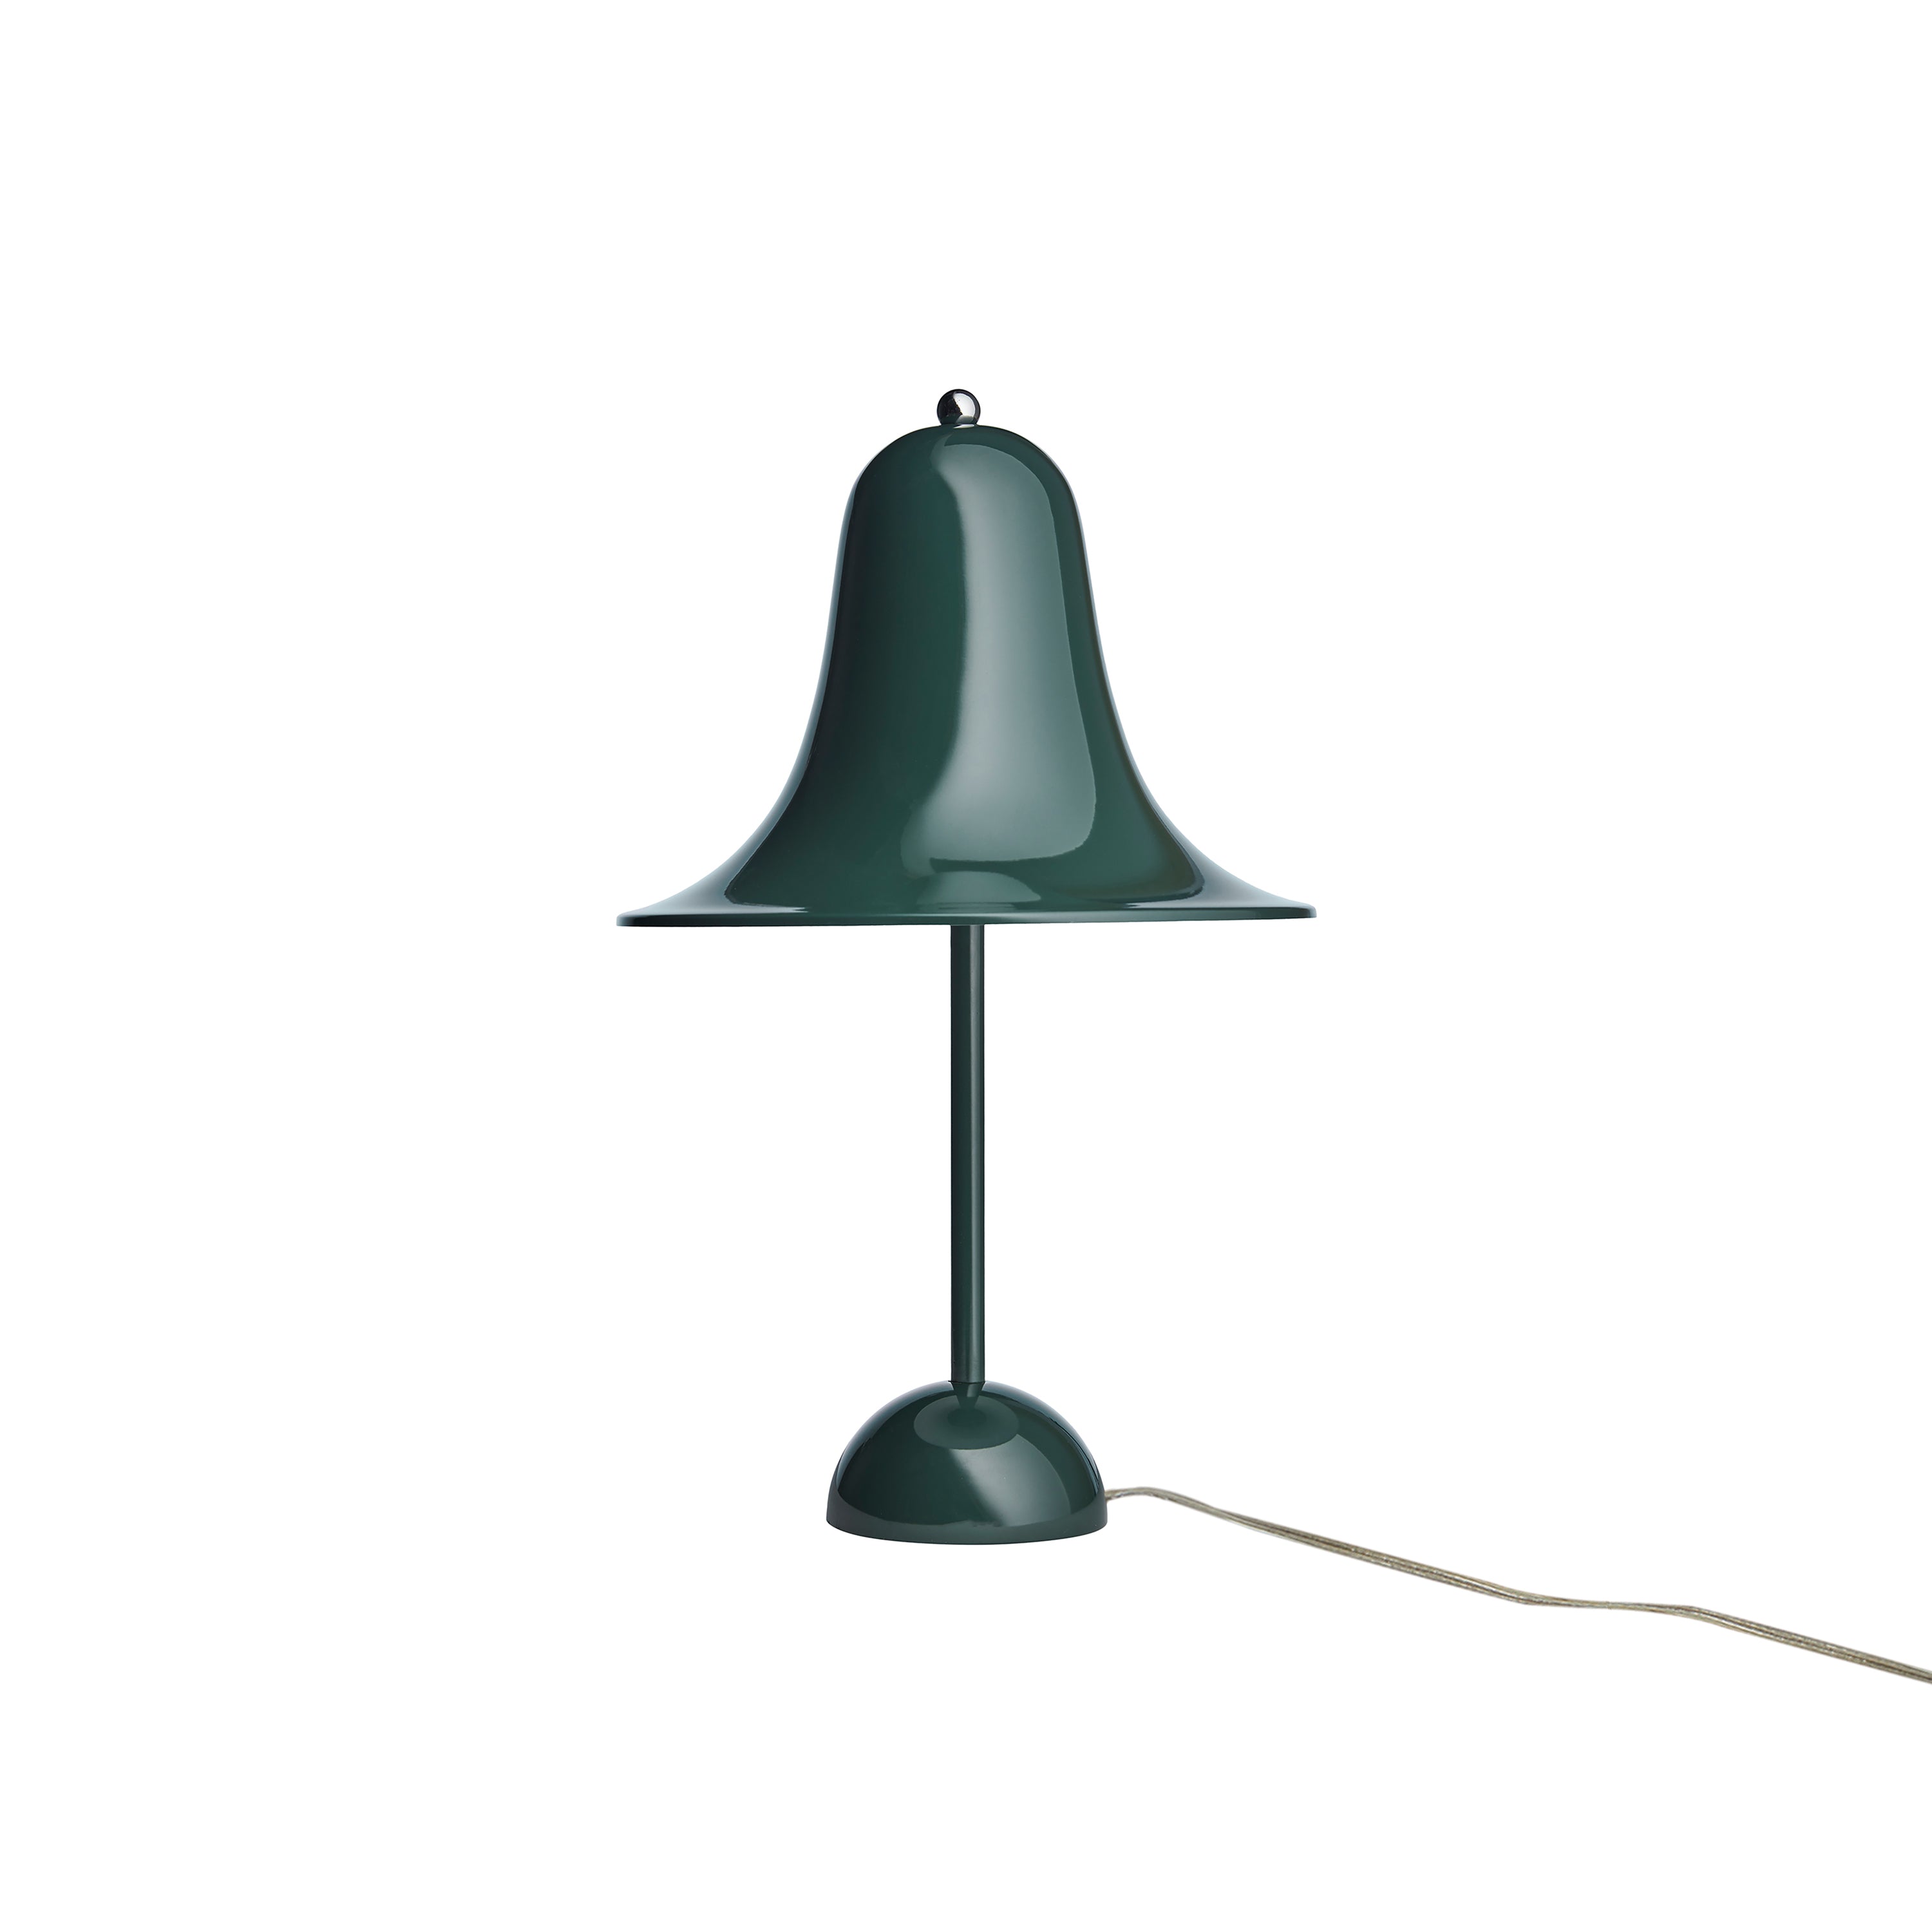 Pantop Table Lamp: Dark Green